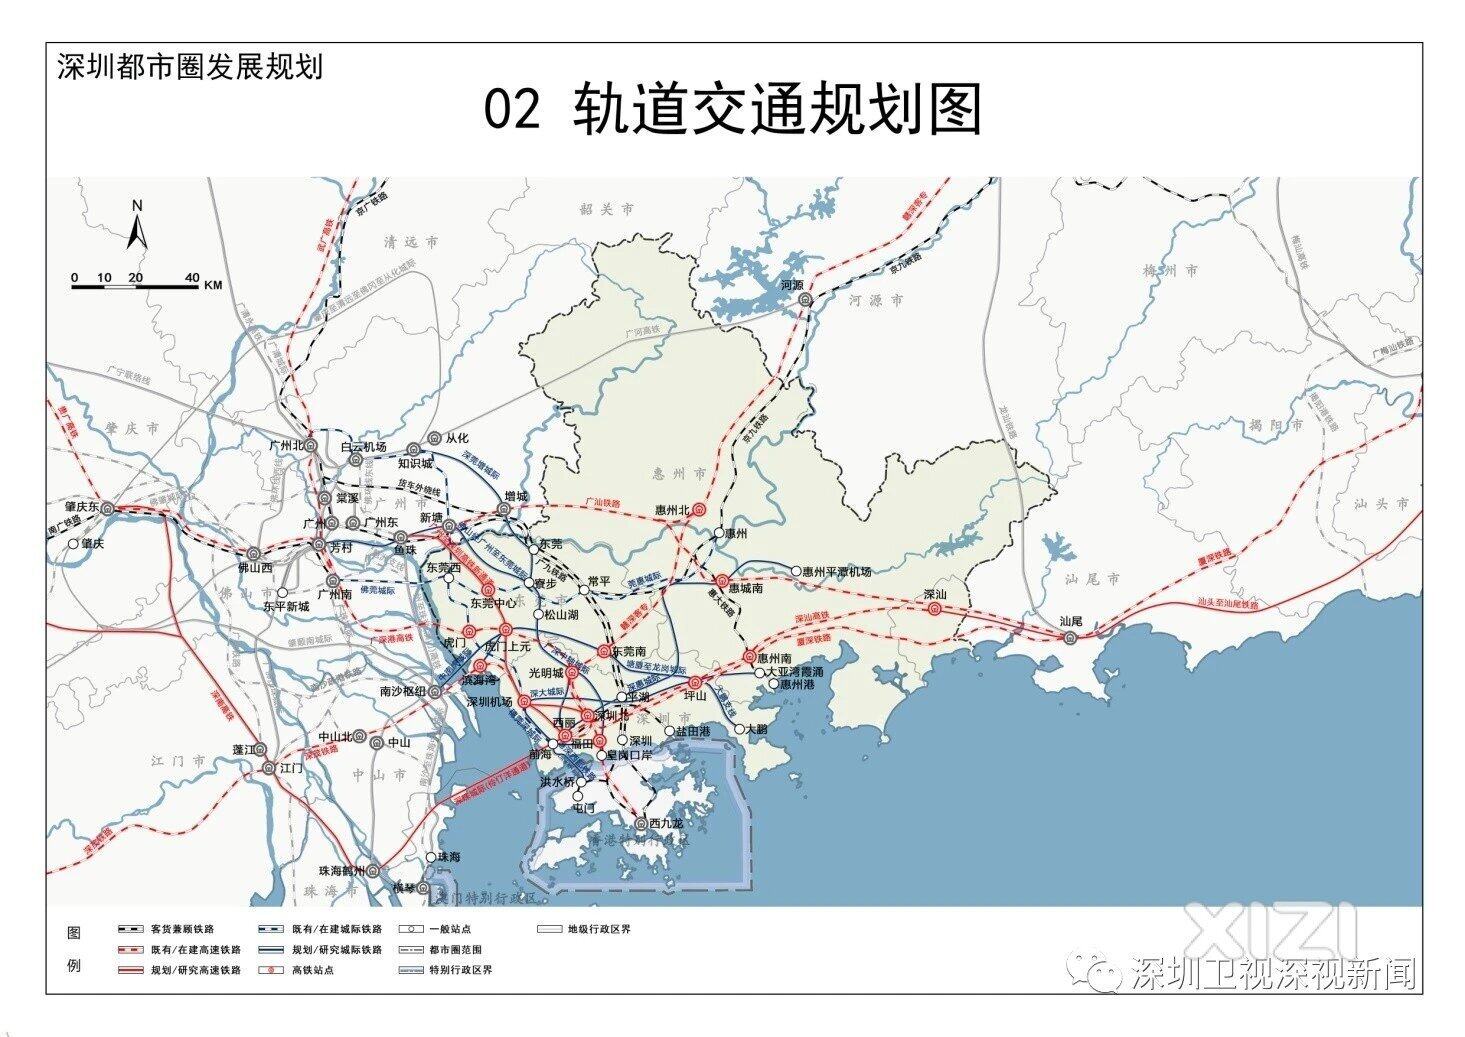 深圳都市圈的轨道规划地图标注有错。